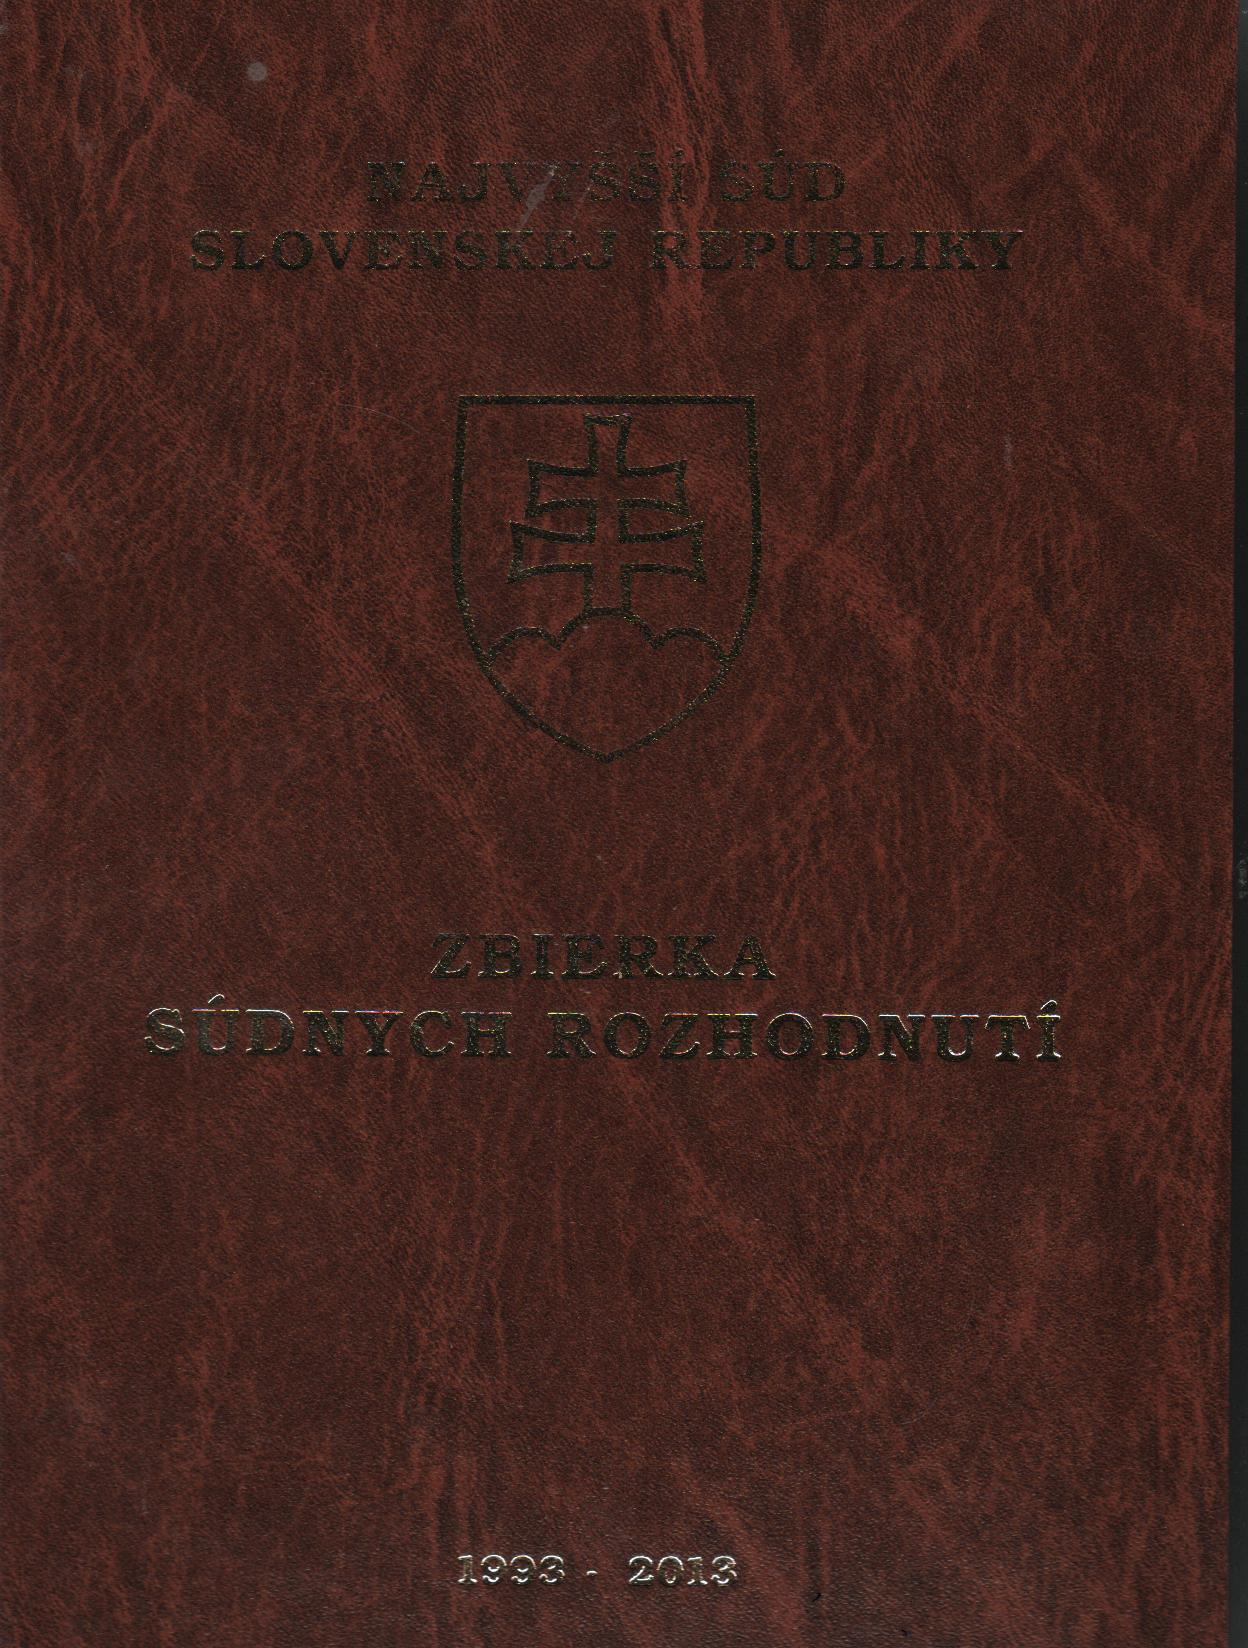 Zbierka súdnych rozhodnutí Najvyššieho súdu Slovenskej republiky 1993-2013